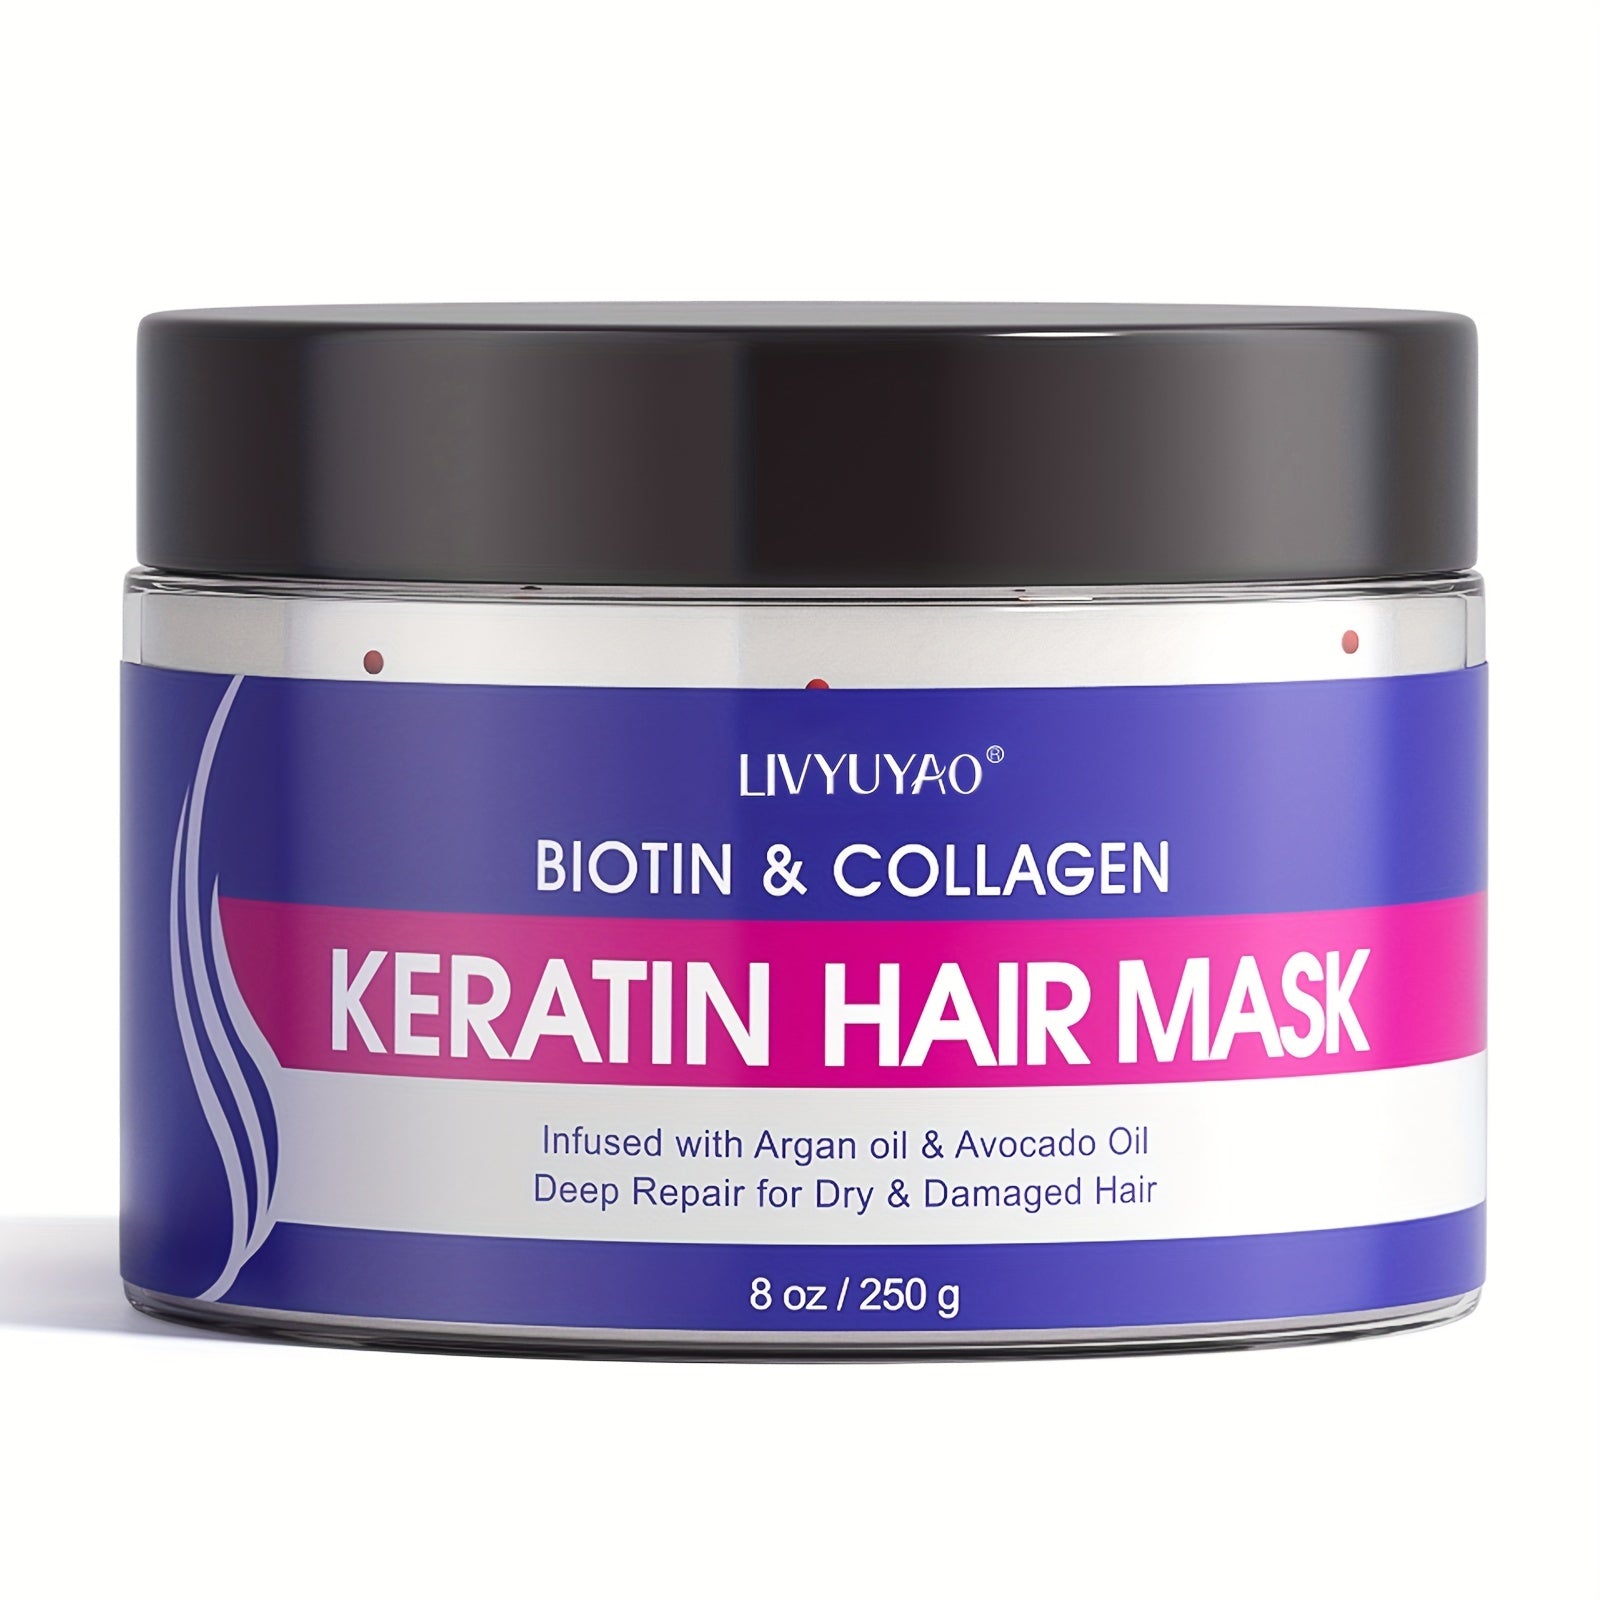 Livyuyao Biotin & Collagen Keratin Hair Mask 250g – Everything Keratin